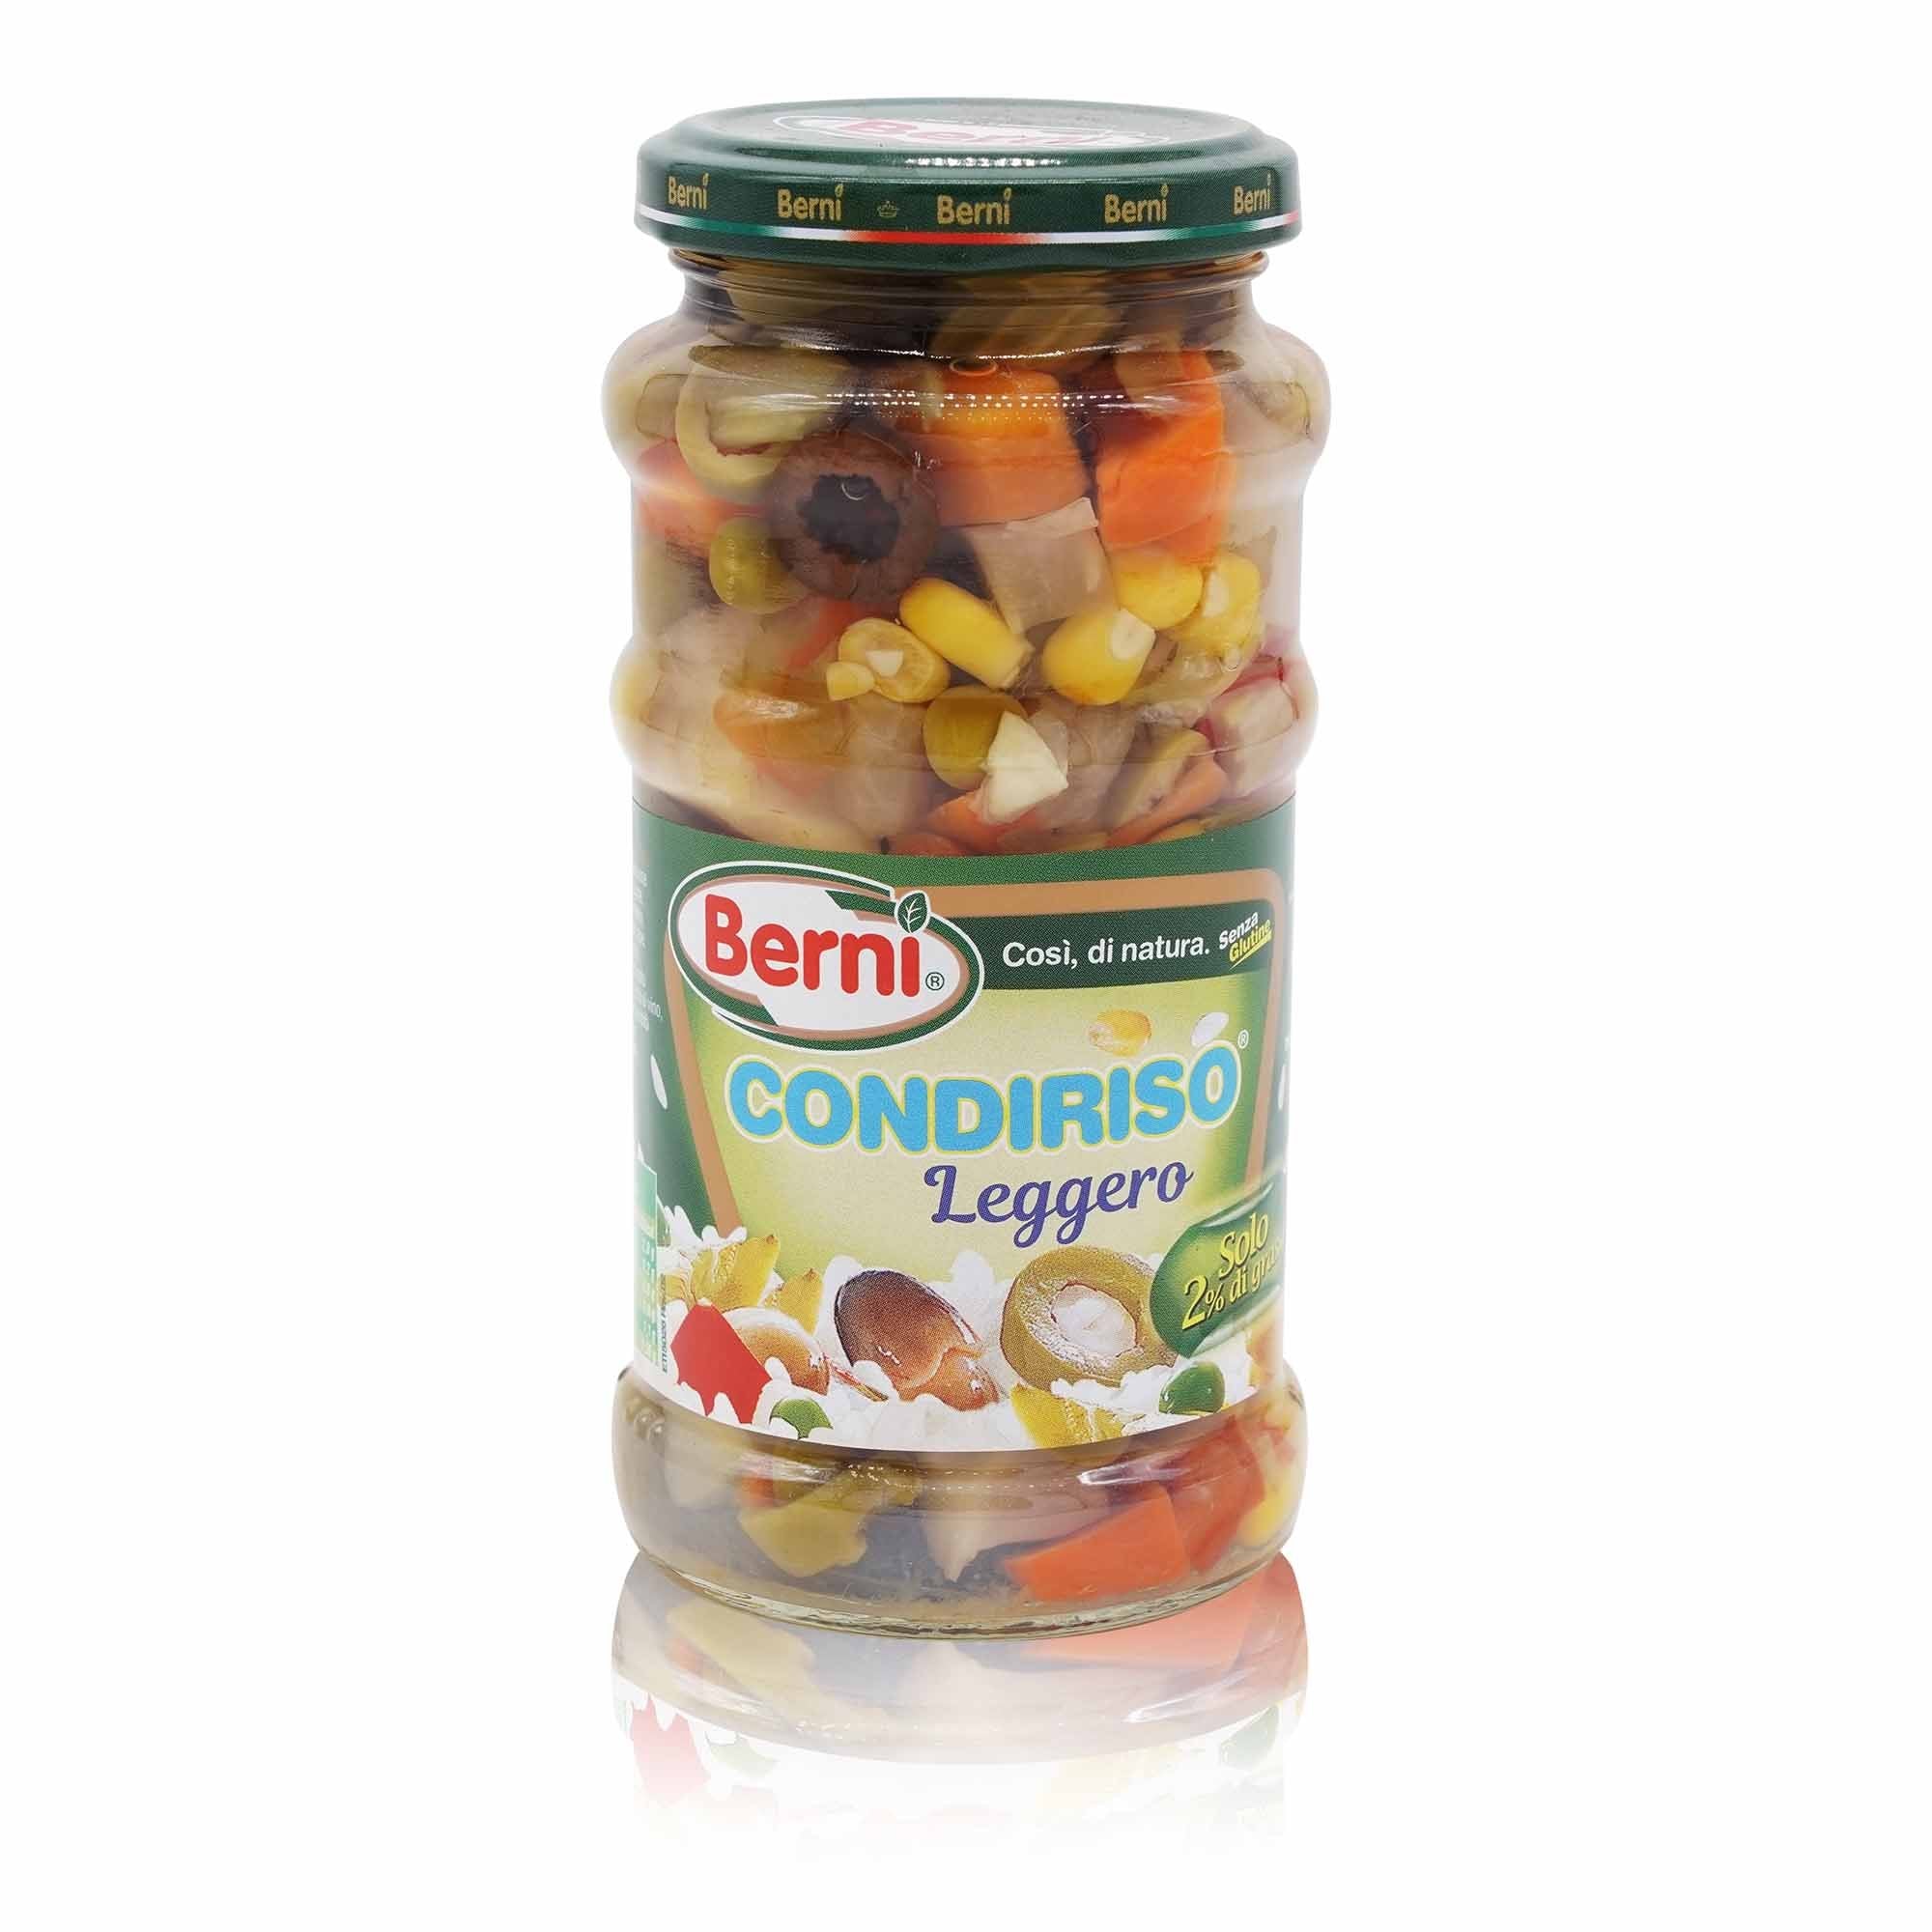 BERNI Condiriso Leggero – Gemüsemix leicht für Reis - 0,300kg - italienisch-einkaufen.de